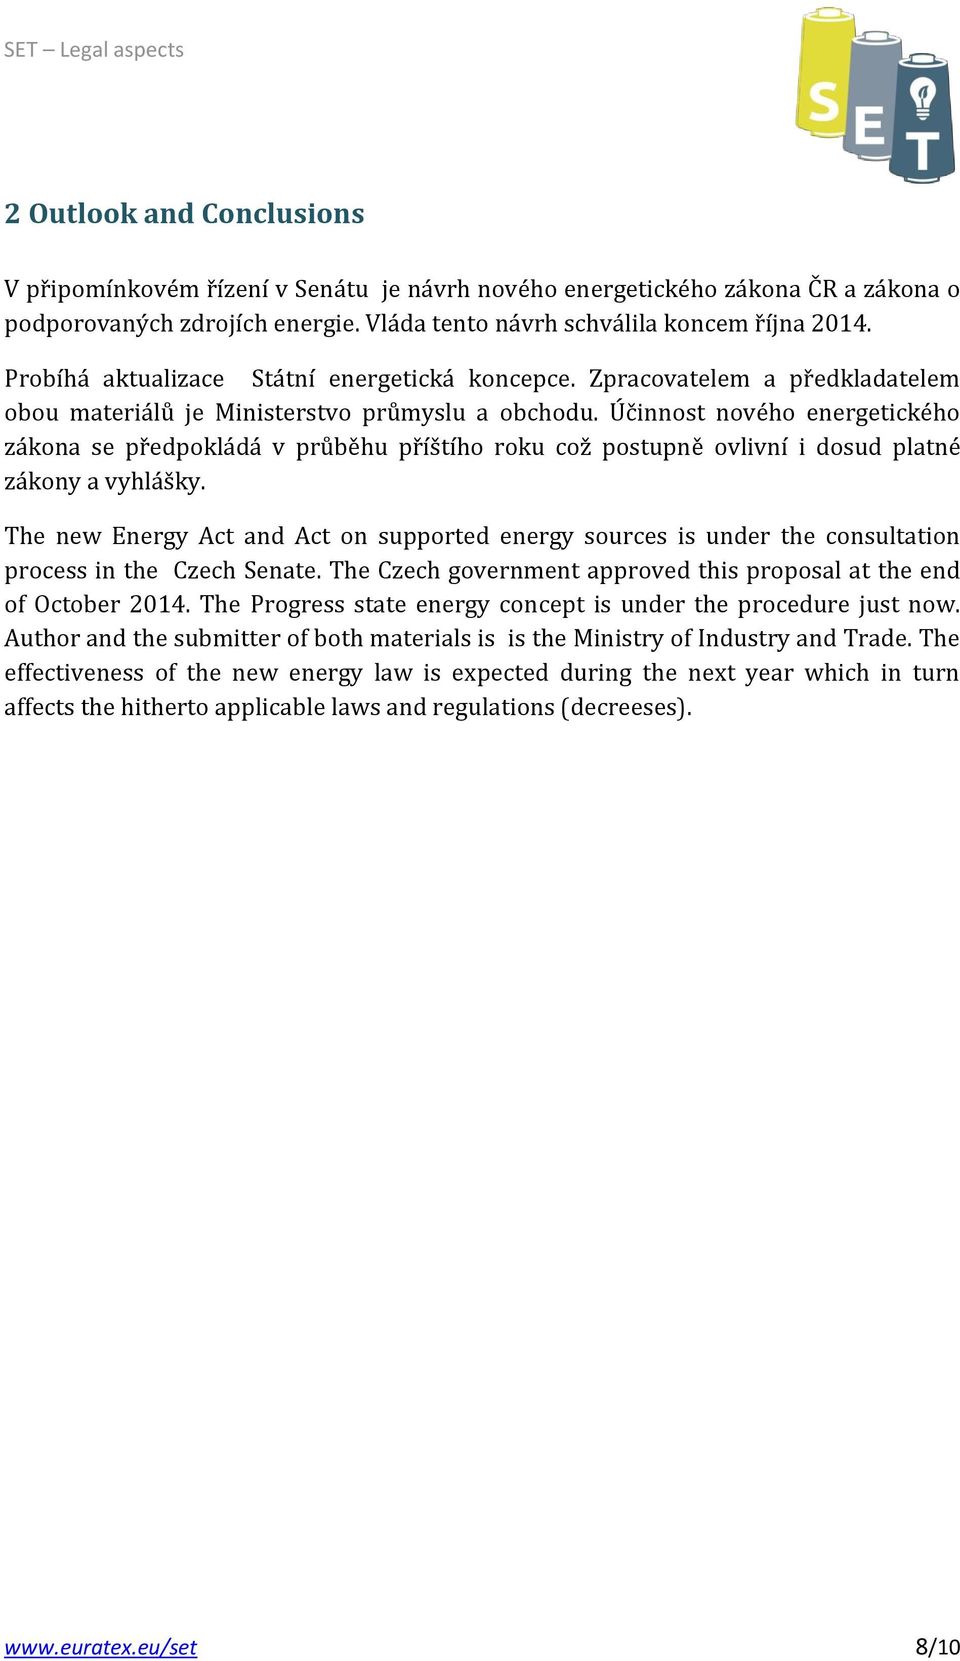 Účinnost nového energetického zákona se předpokládá v průběhu příštího roku což postupně ovlivní i dosud platné zákony a vyhlášky.